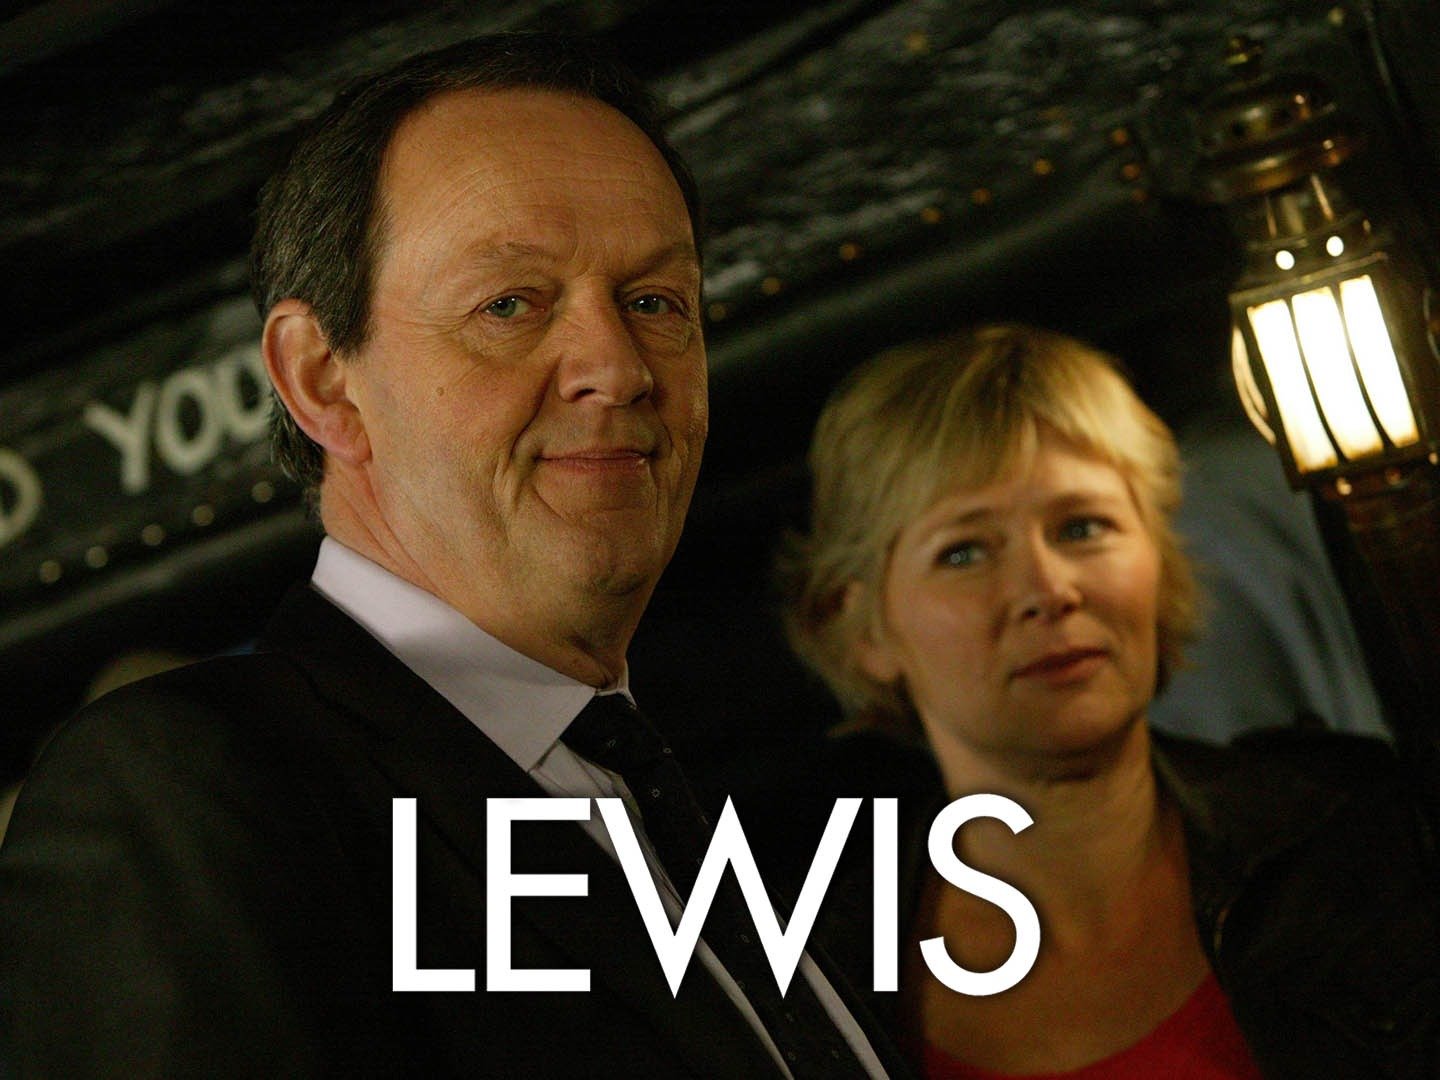 inspector lewis season 8 dvd release date